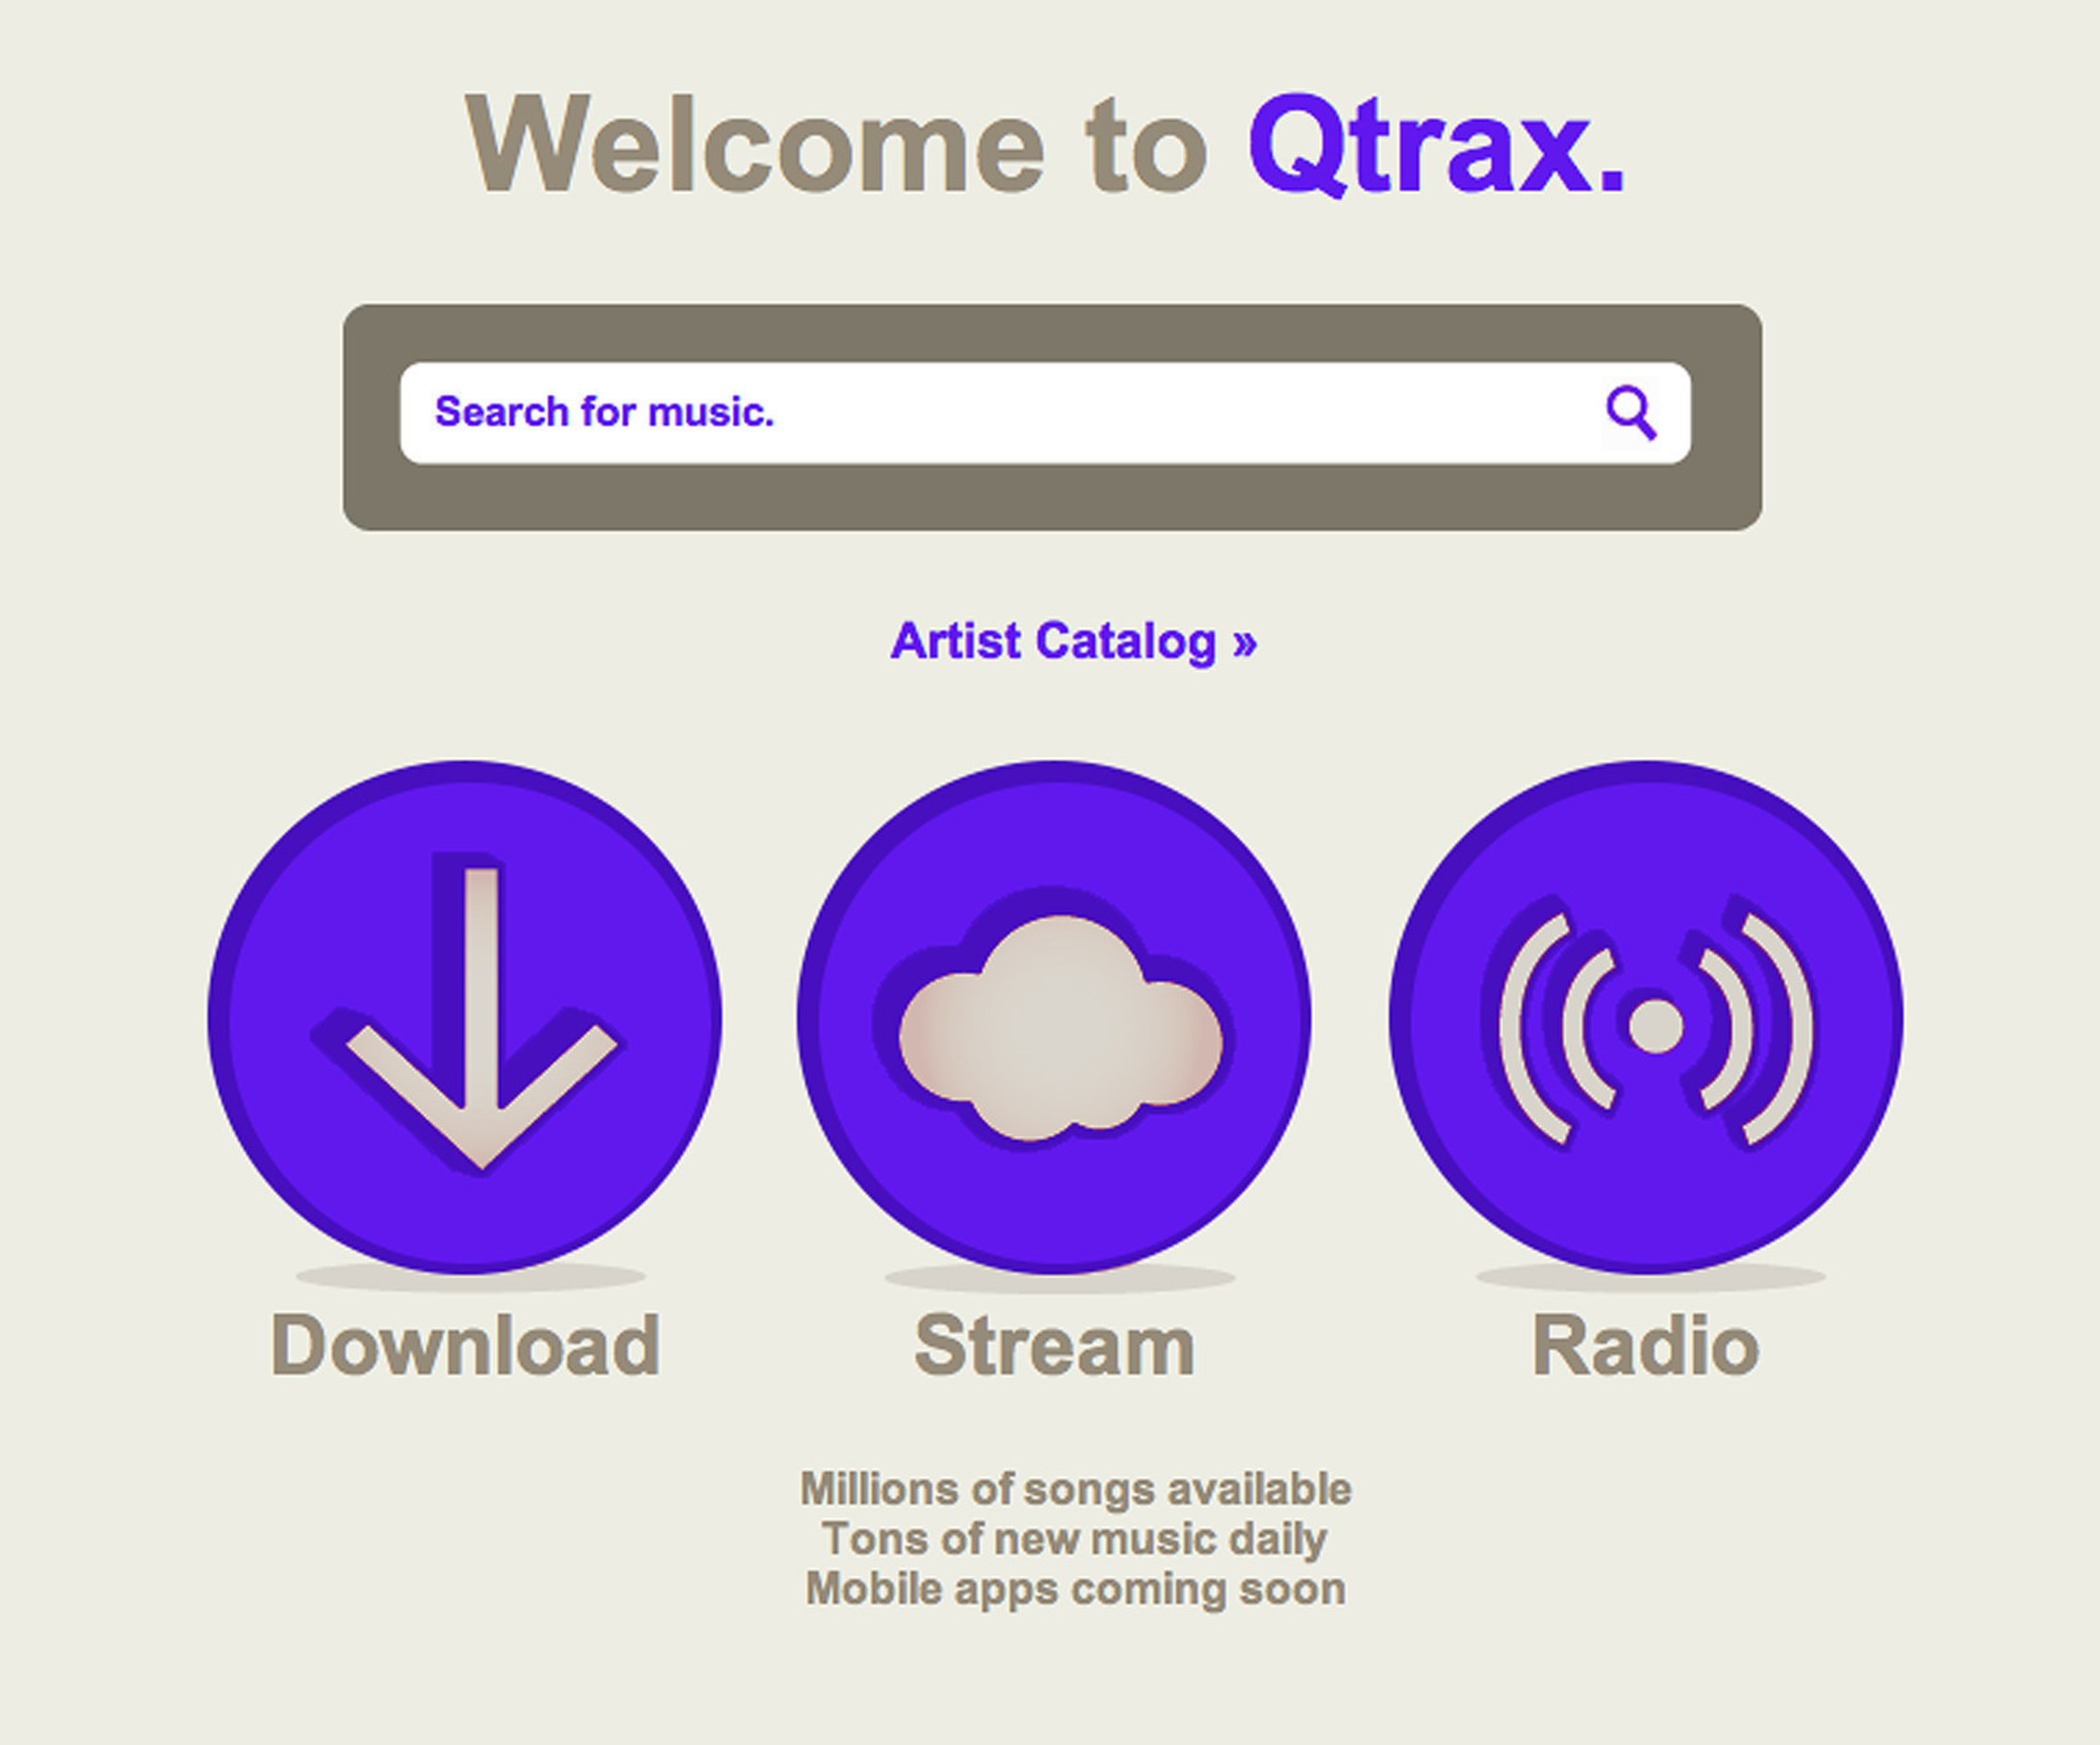 Qtrax